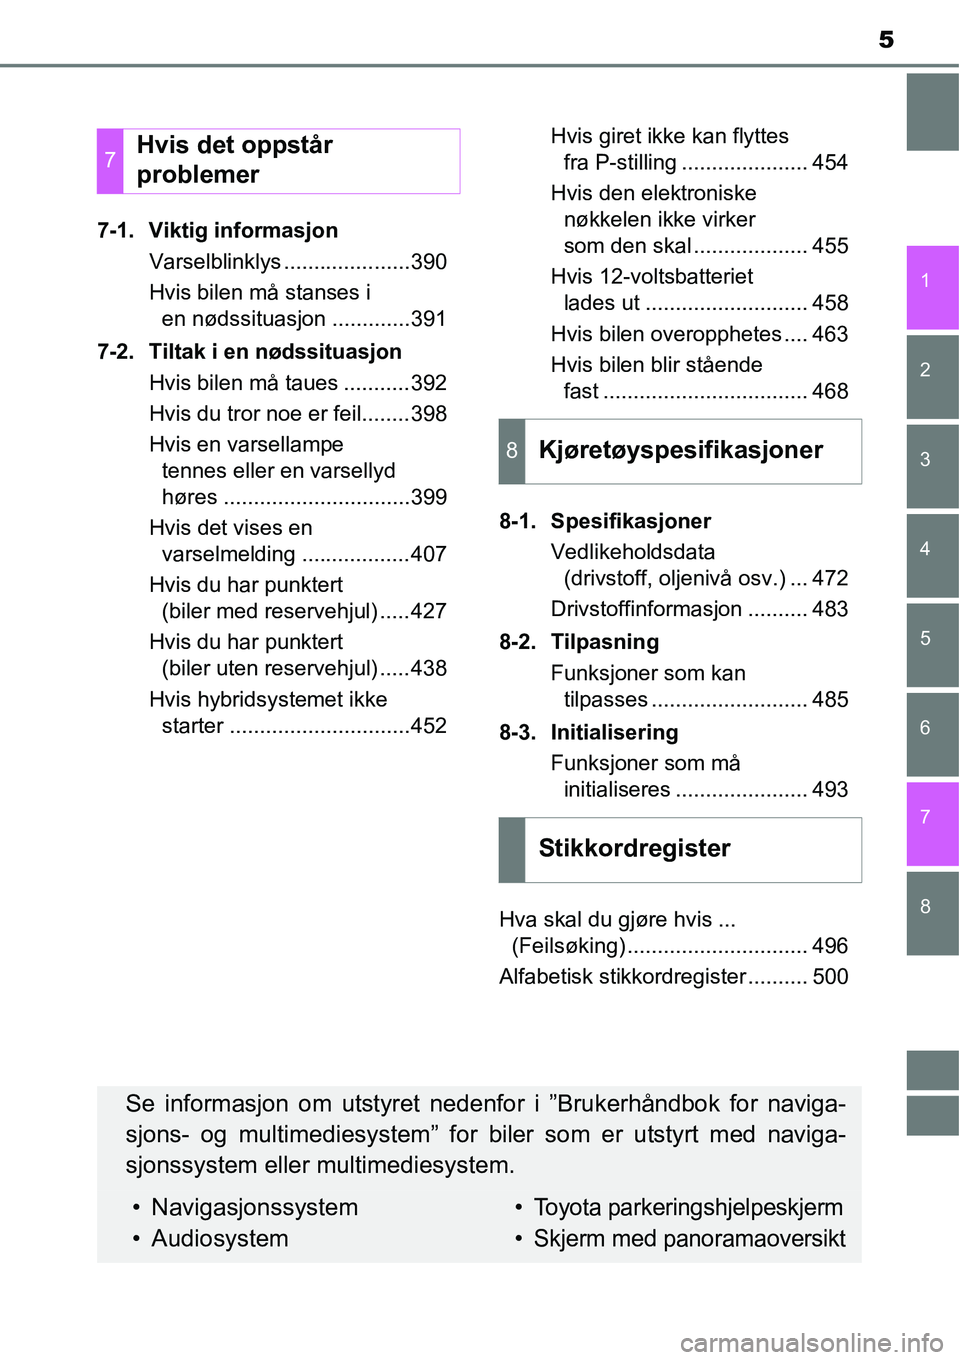 TOYOTA RAV4 2015  Instruksjoner for bruk (in Norwegian) 8 7
5
1
6 5
4
3
2
7-1. Viktig informasjon
Varselblinklys .....................390
Hvis bilen må stanses i 
en nødssituasjon .............391
7-2. Tiltak i en nødssituasjon 
Hvis bilen må taues ...